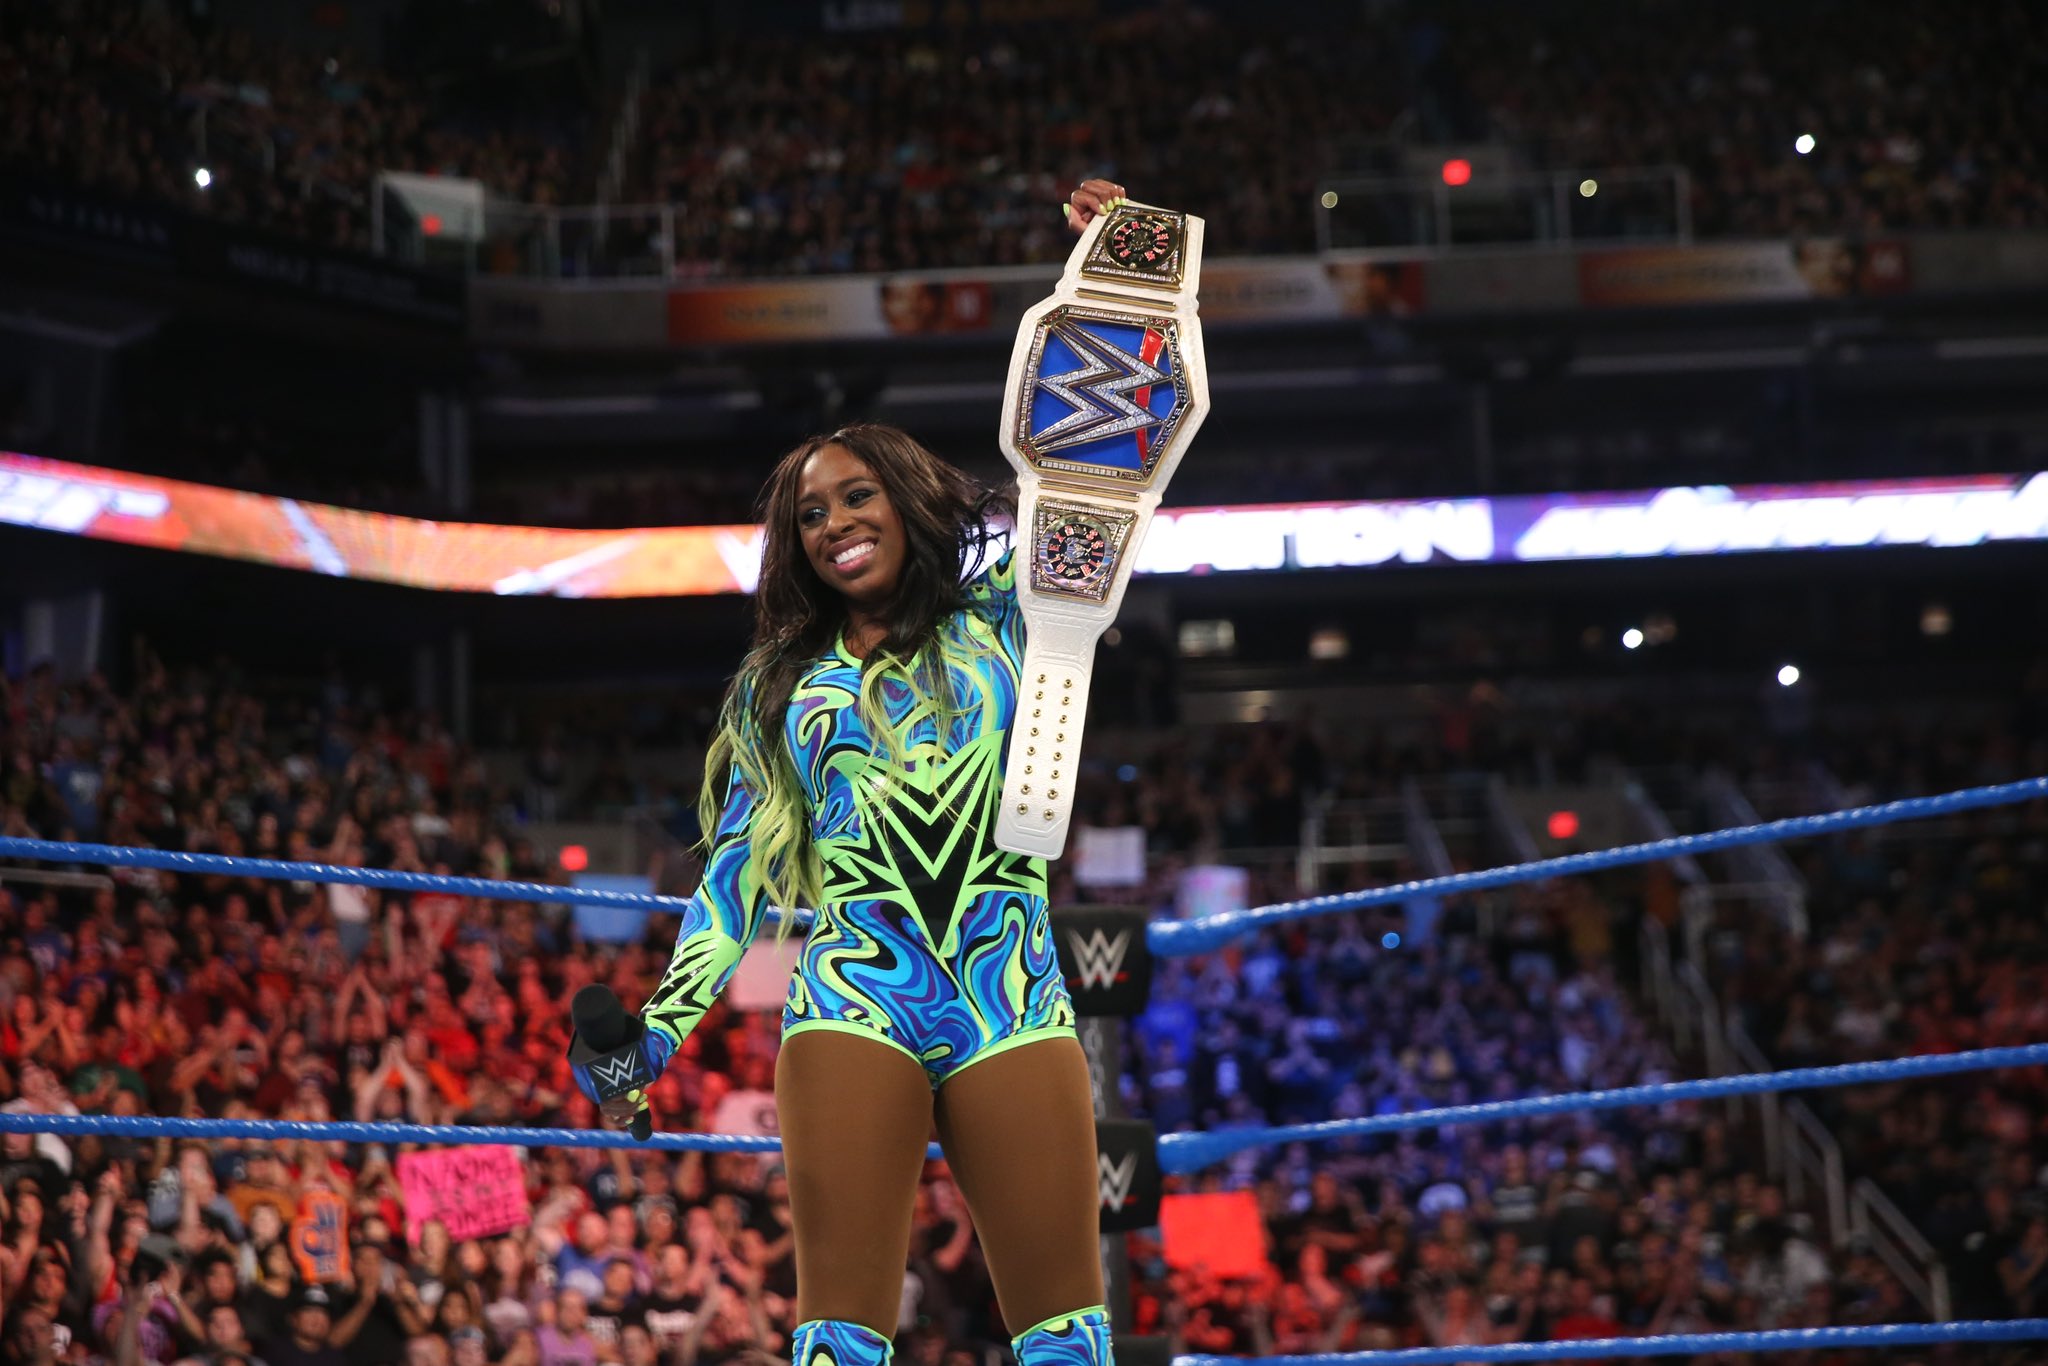 Naomi với tư cách là nhà vô địch SmackDown trong WWE